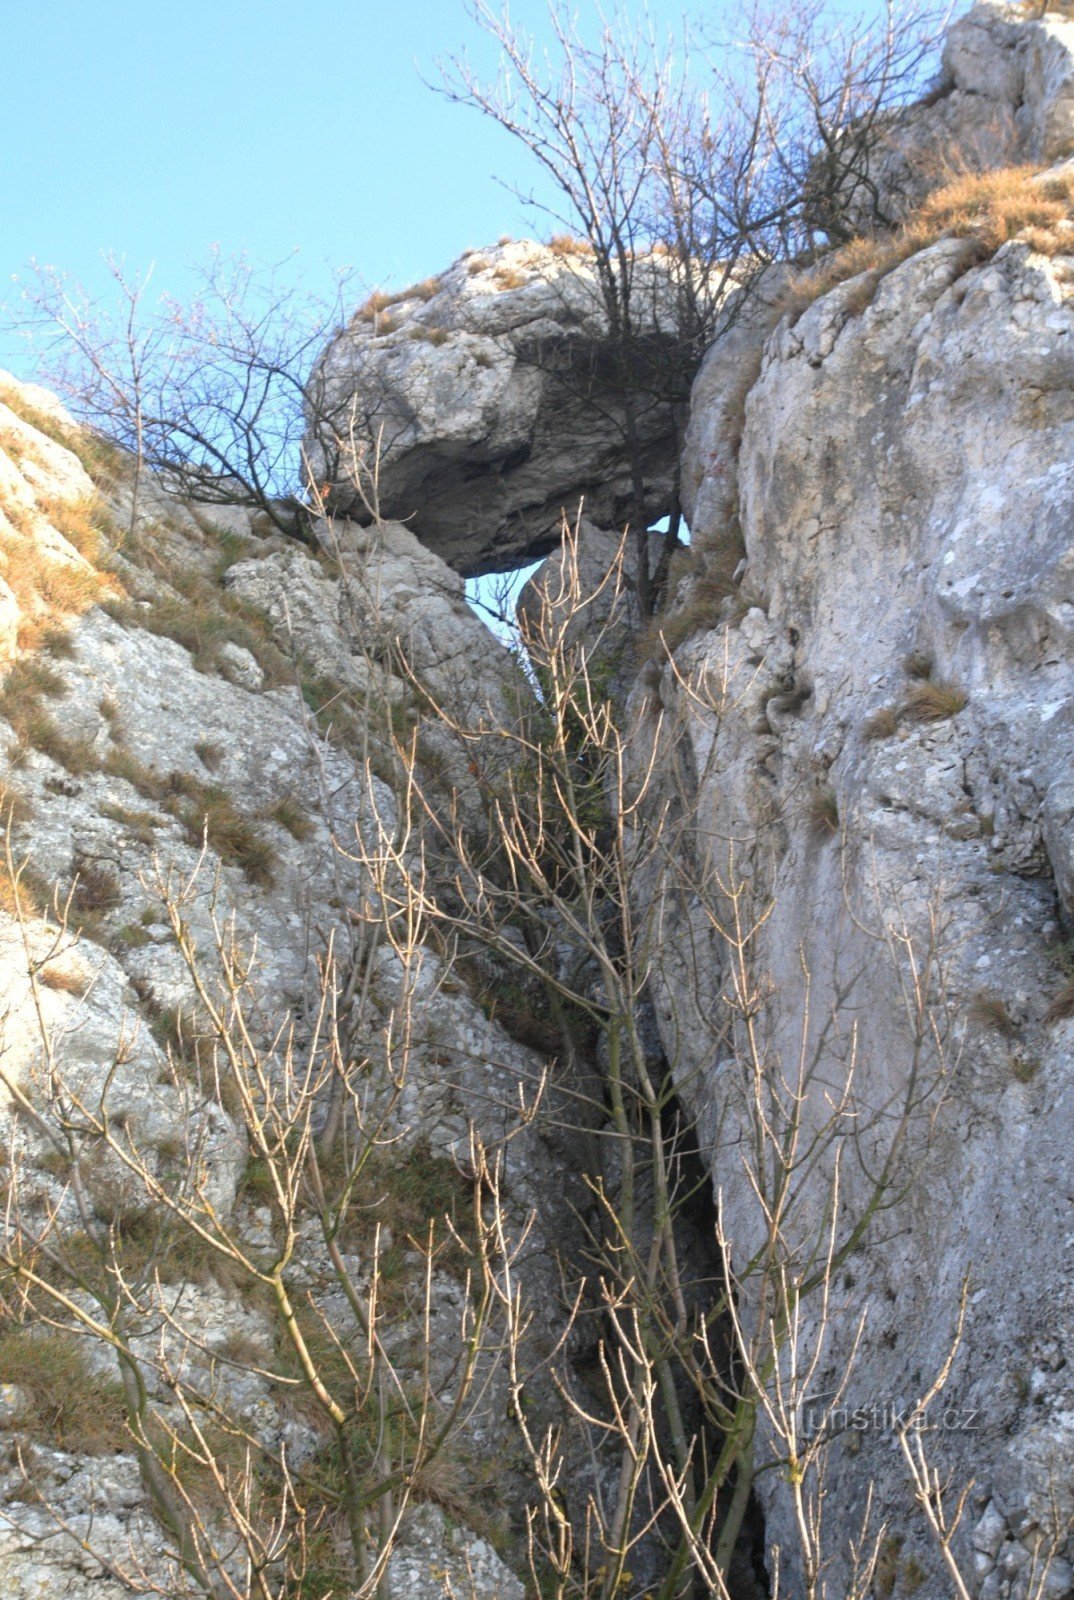 Crack cave Under the boulder